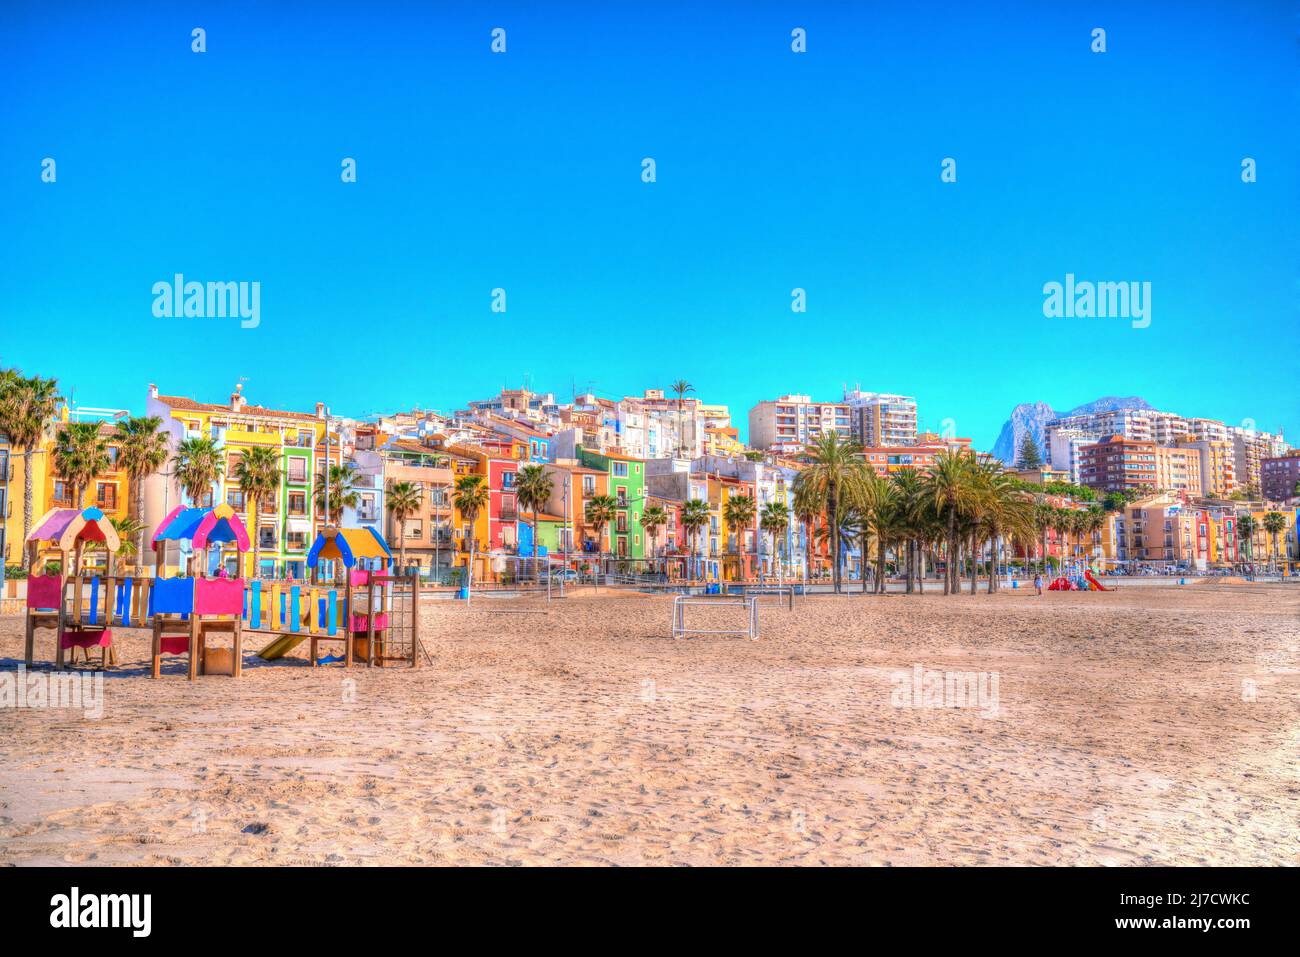 Villajoyosa Spagna colorata spiaggia scena con area giochi Costa Blanca Alicante hdr Foto Stock